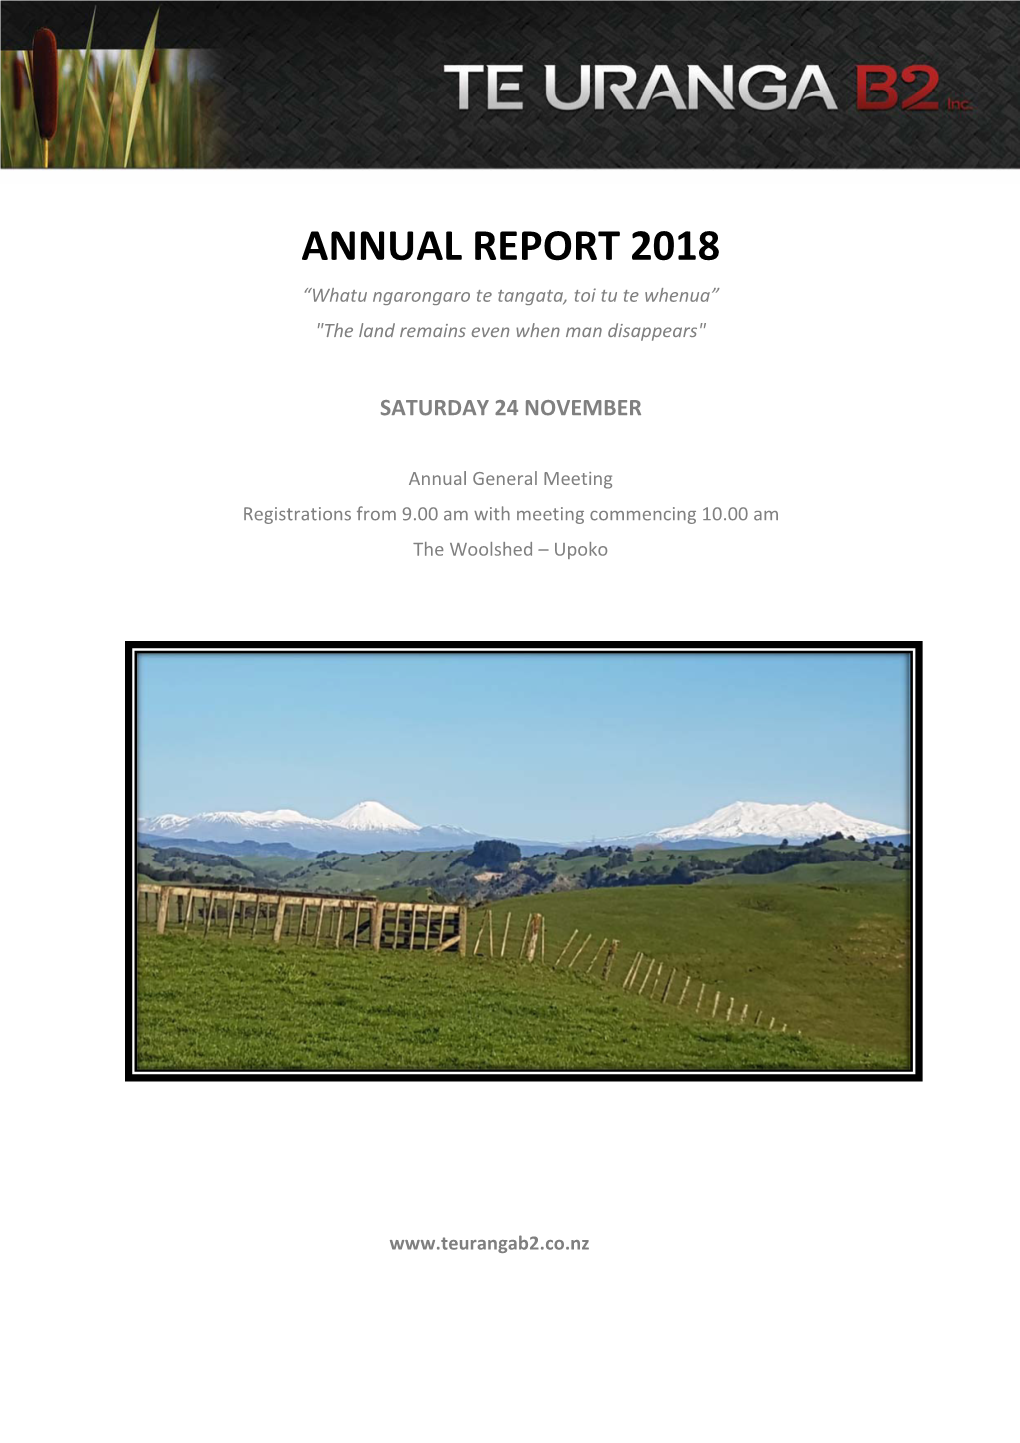 Te Uranga B2 Inc, 2018 Annual Report